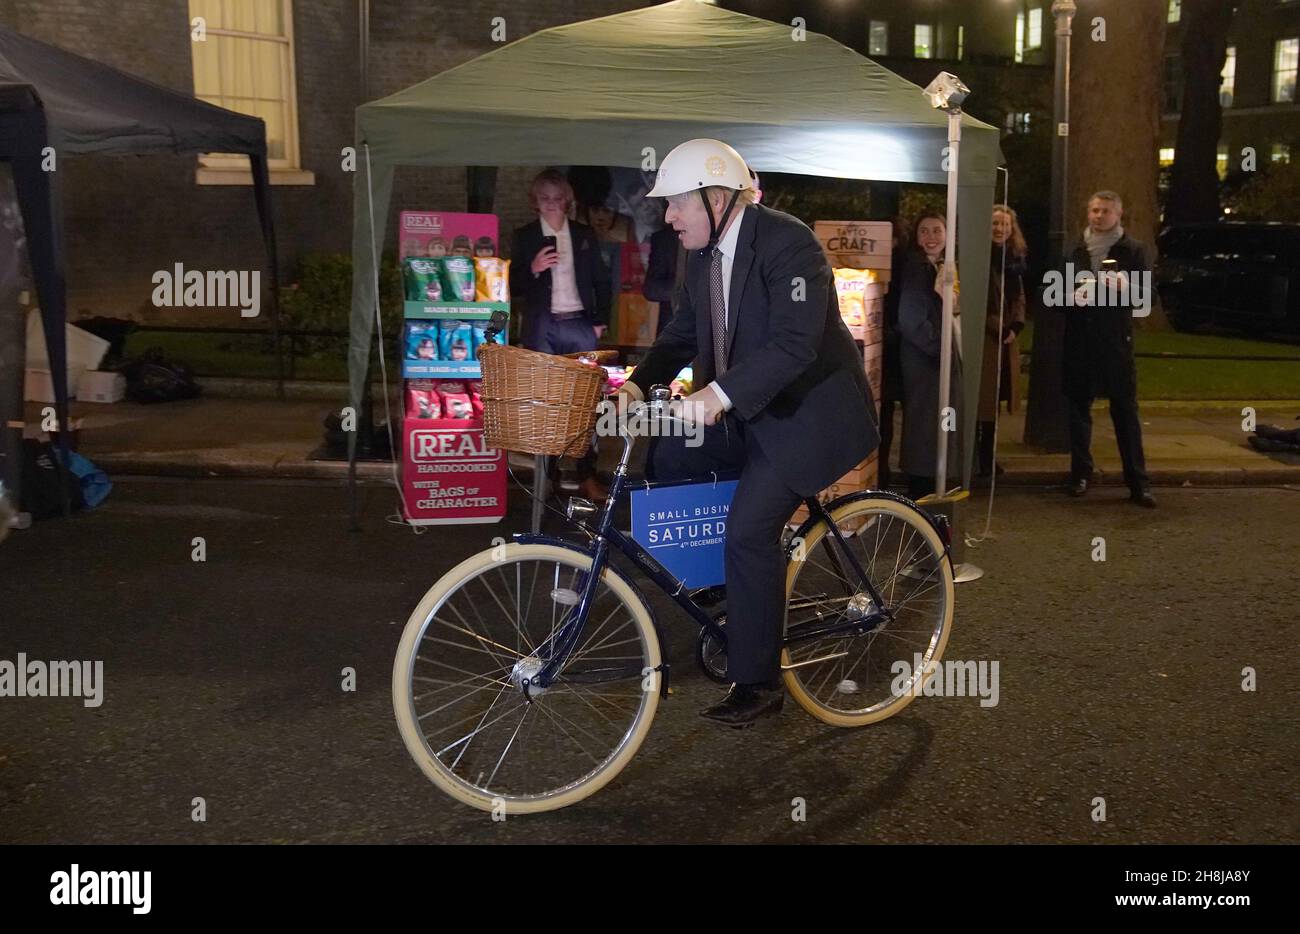 Premierminister Boris Johnson auf einem Fahrrad, als er einen britischen Lebensmittel- und Getränkemarkt besucht, der in der Downing Street in London eingerichtet wurde. Bilddatum: Dienstag, 30. November 2021. Stockfoto